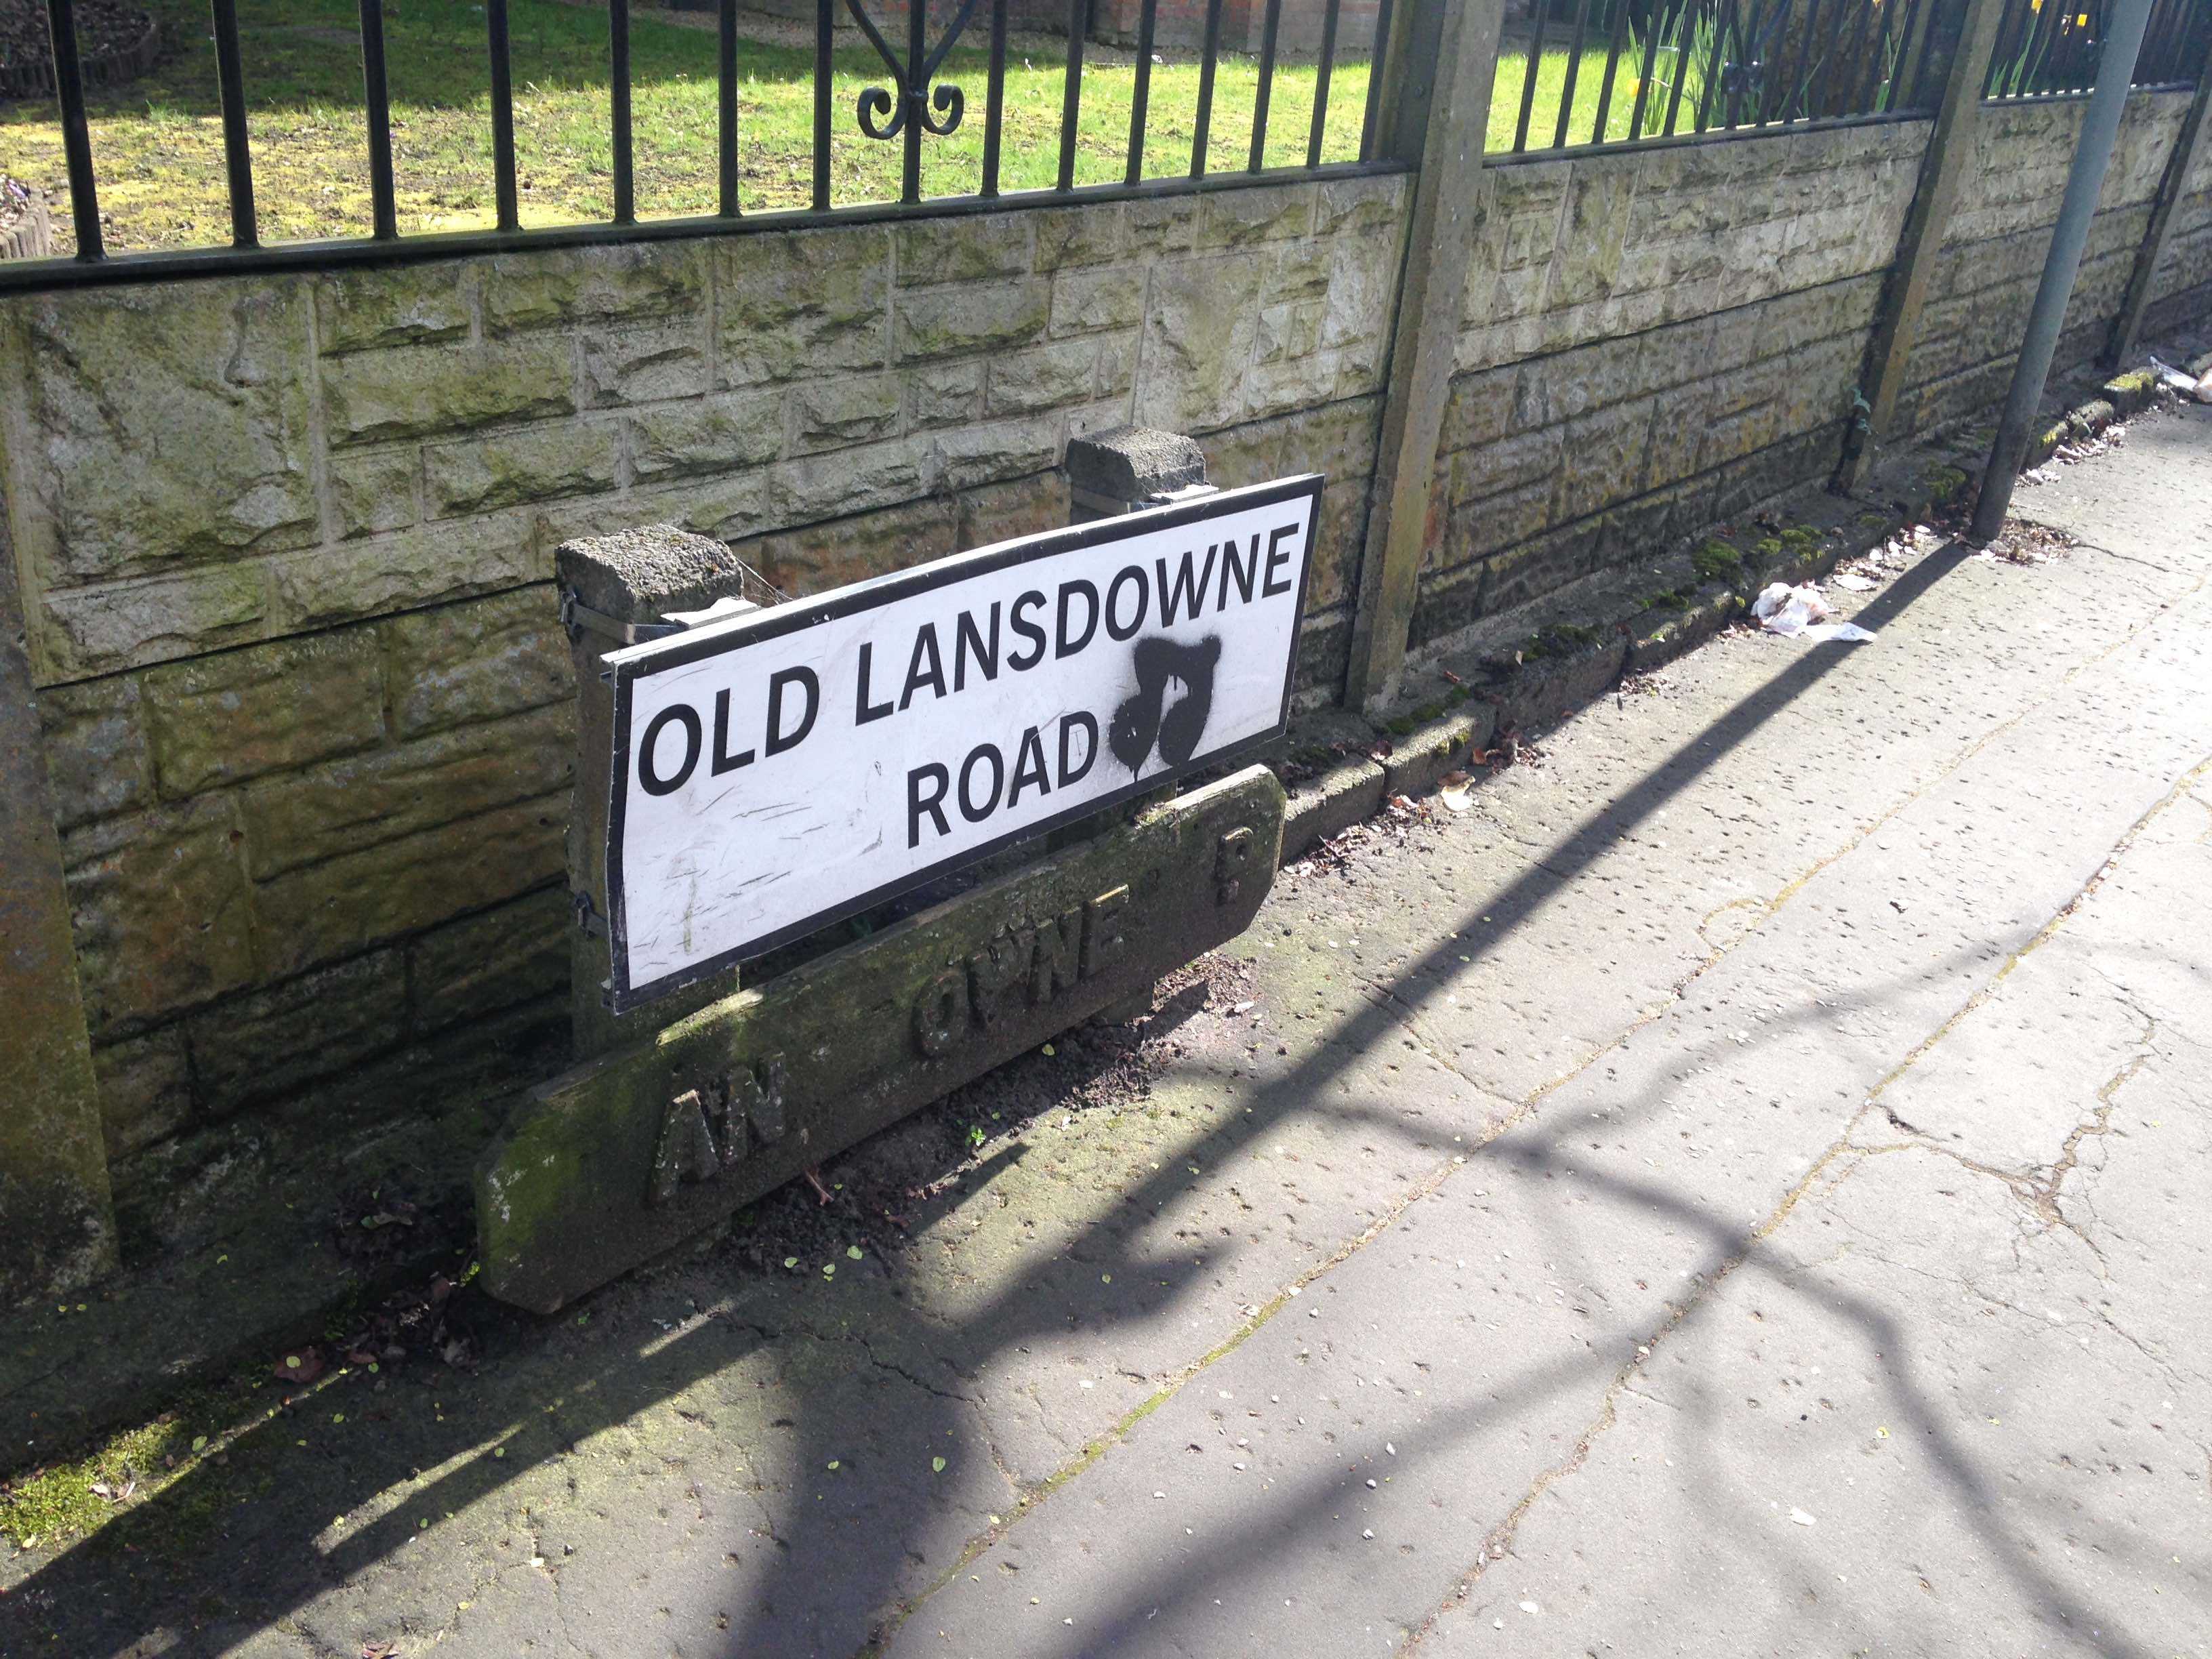 Old Landsdowne Road Large